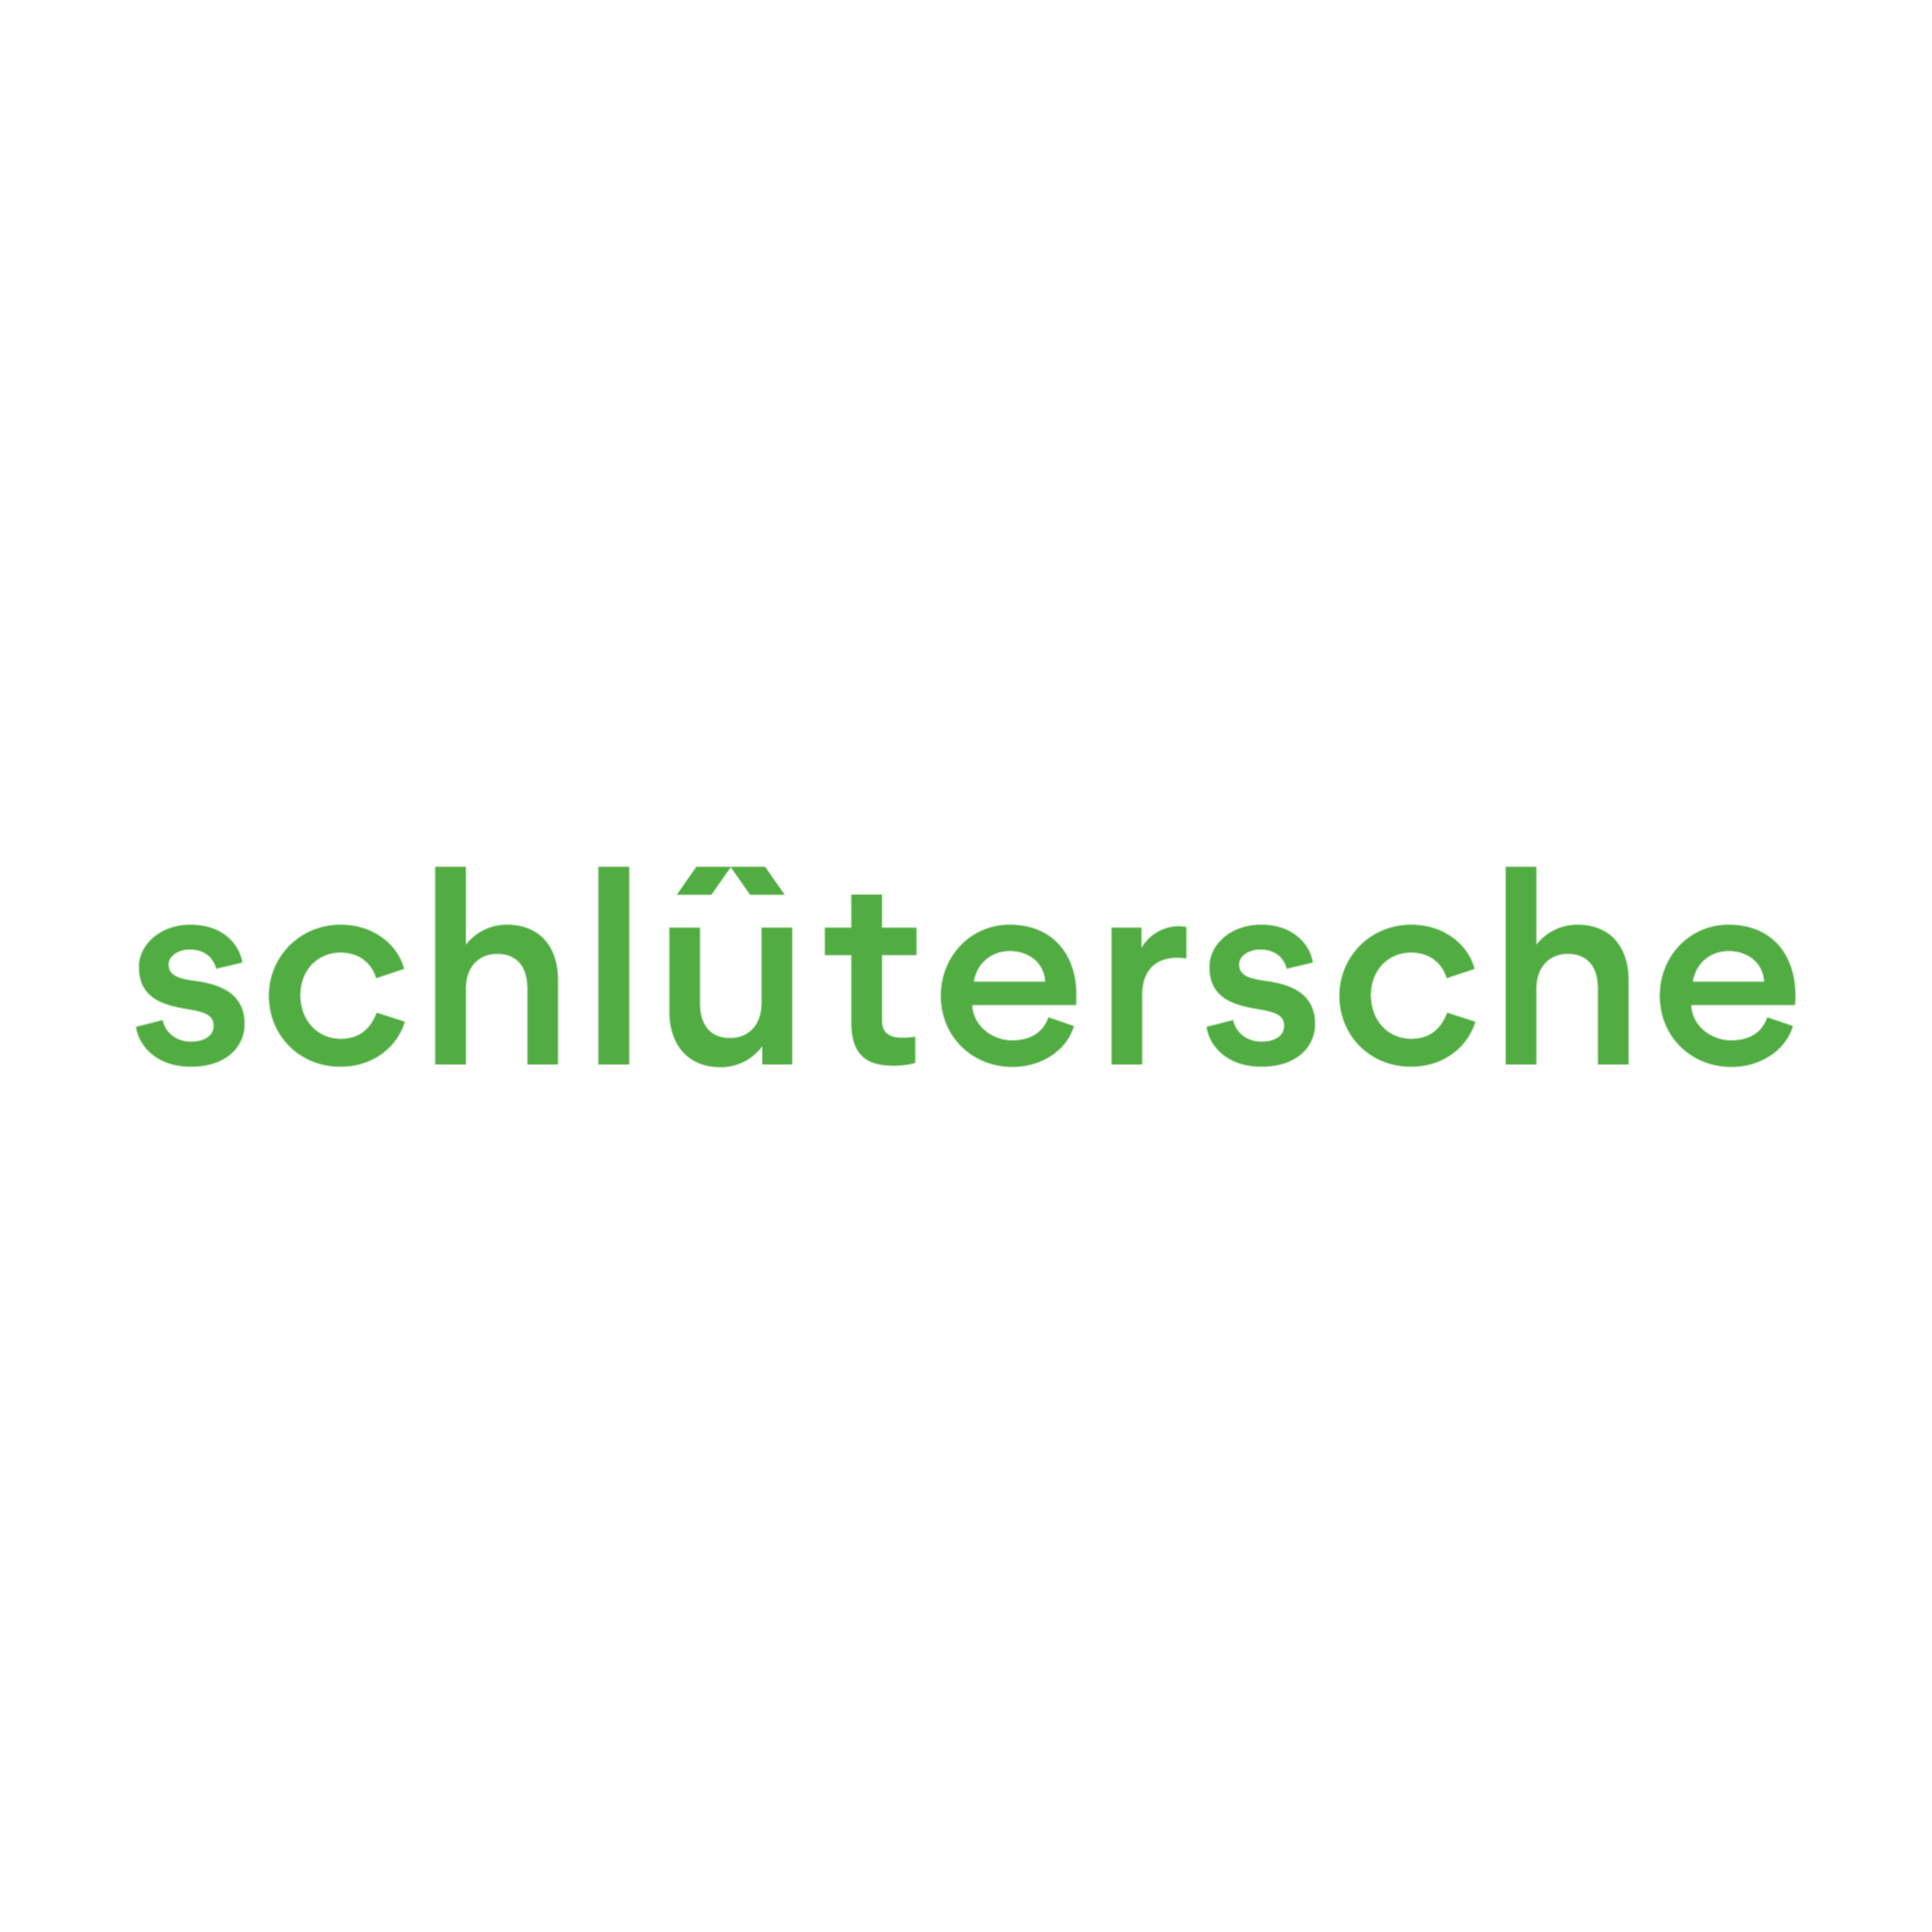 Schlütersche Mediengruppe in Hannover - Logo